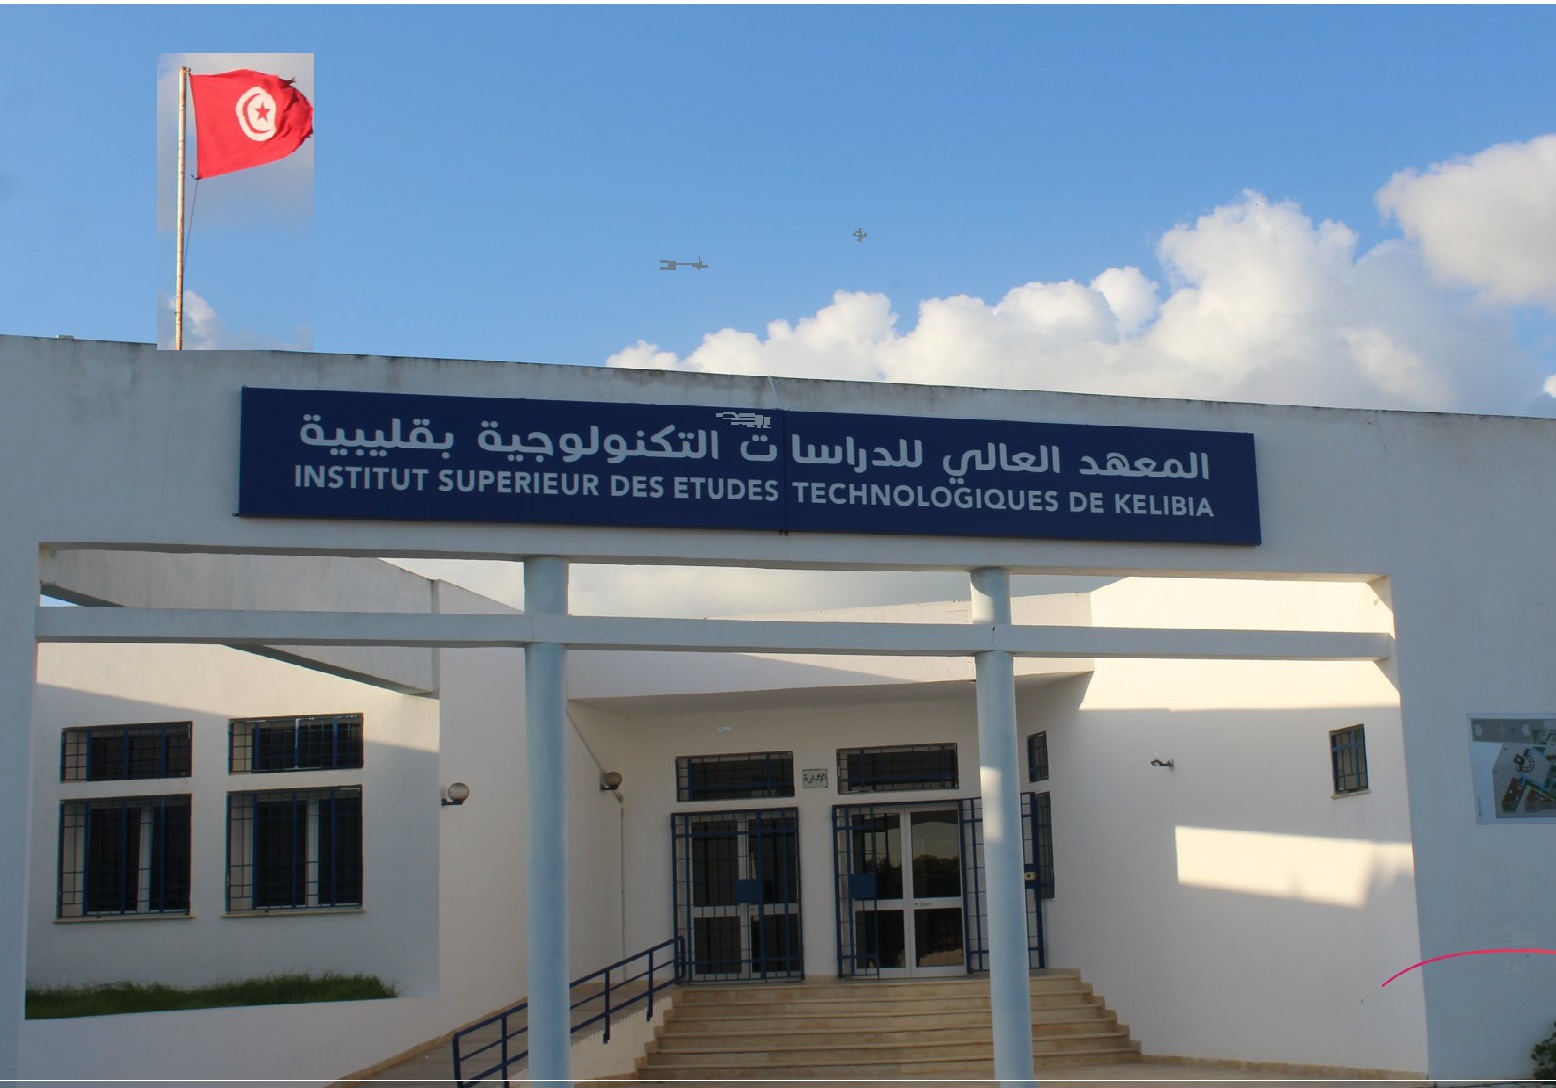 Institut Supérieur des Etudes Technologiques de Kélibia